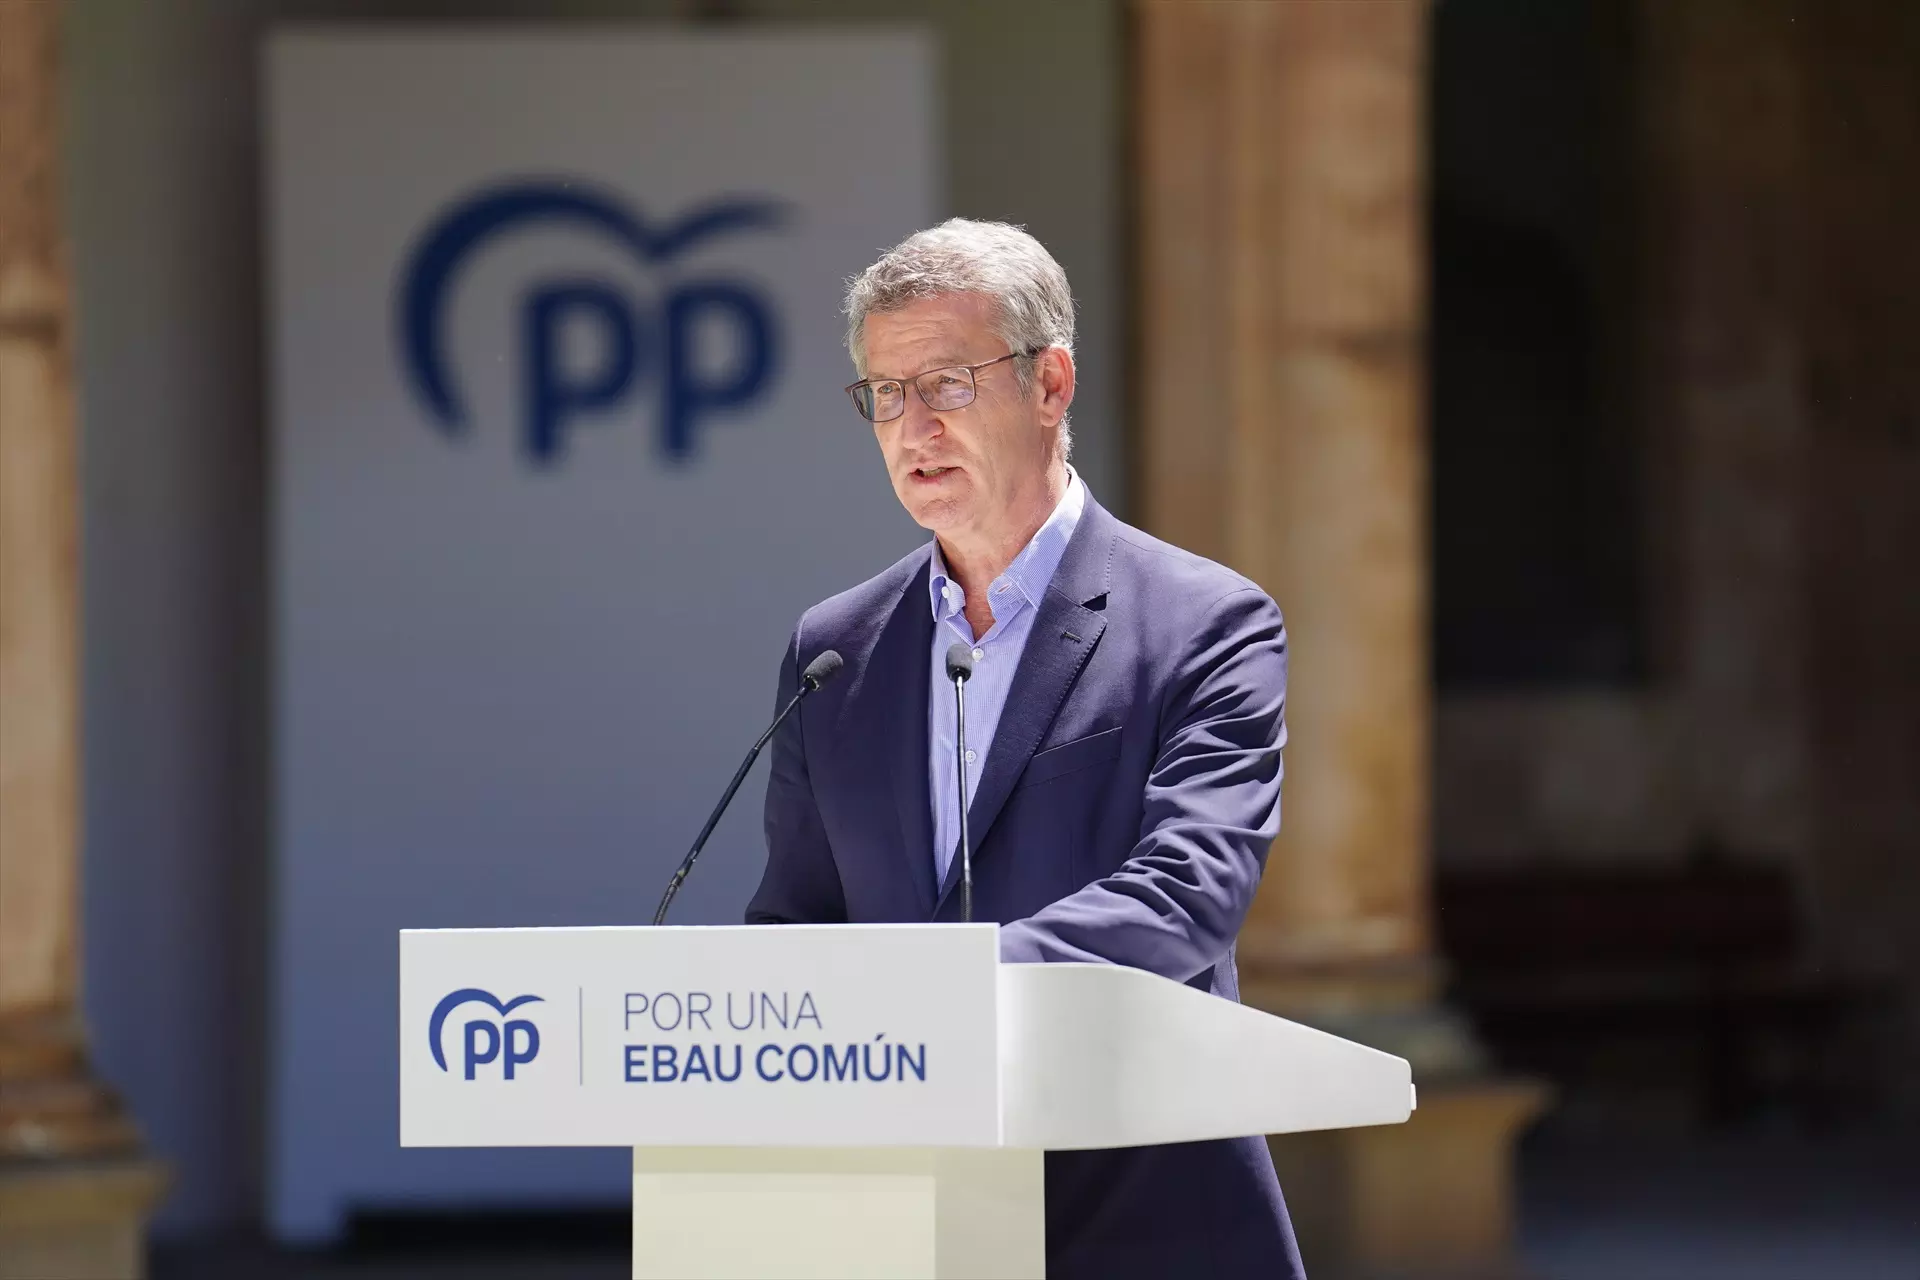 El presidente del Partido Popular, Alberto Núñez Feijóo, este lunes en Salamanca. — Manuel Ángel Laya / Europa Press